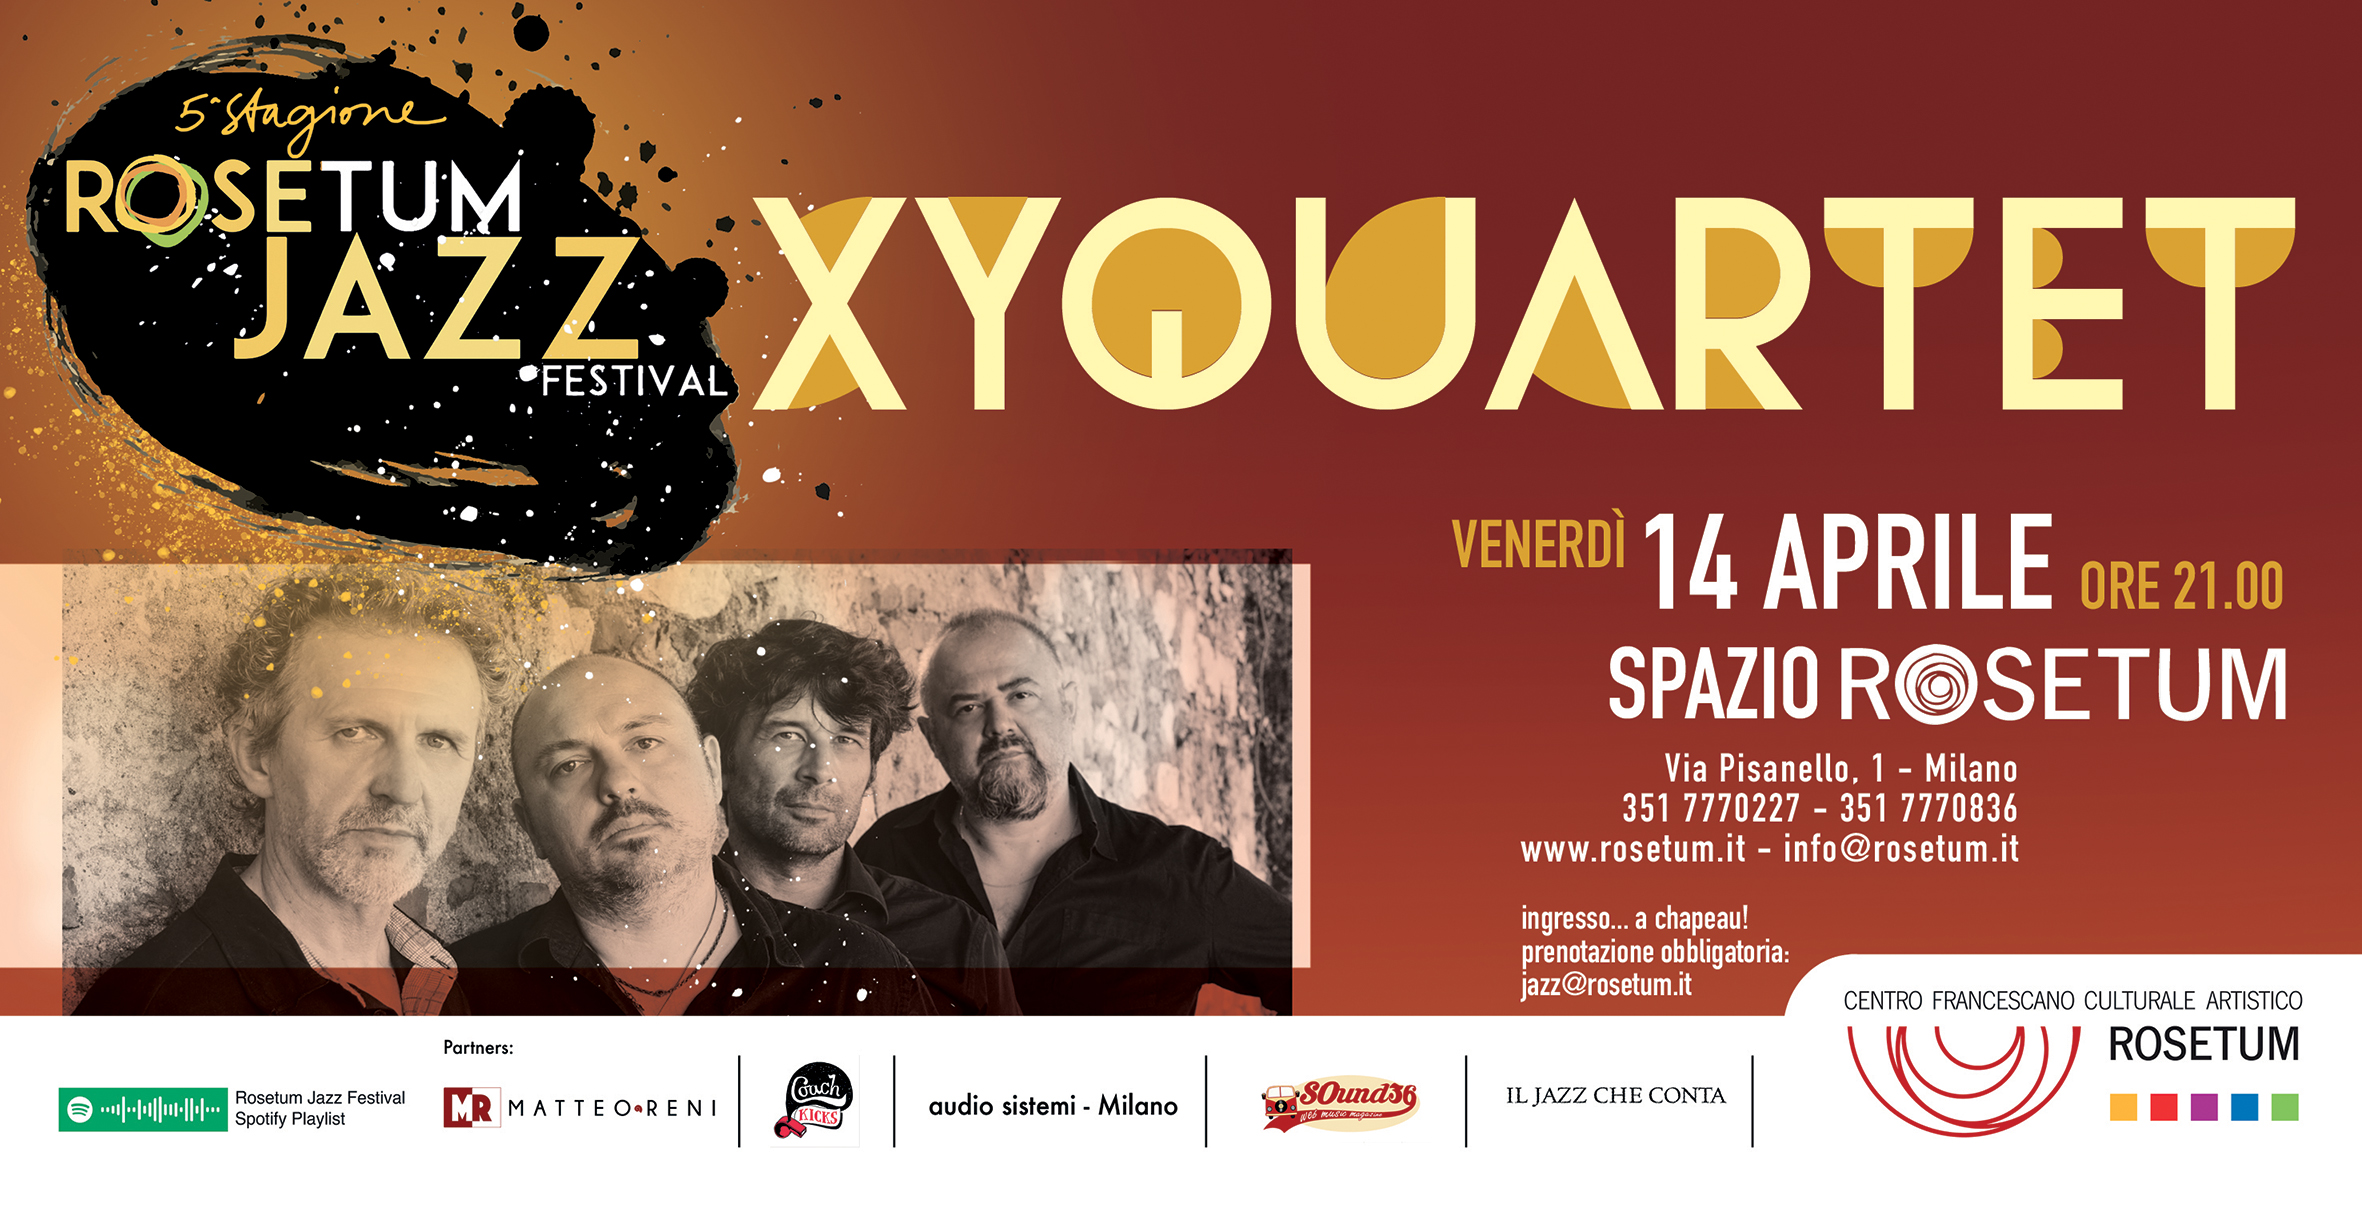 xyquartet 14 aprile ore 21. prenotazione obbligatoria scrivendo a jazz@rosetum.it